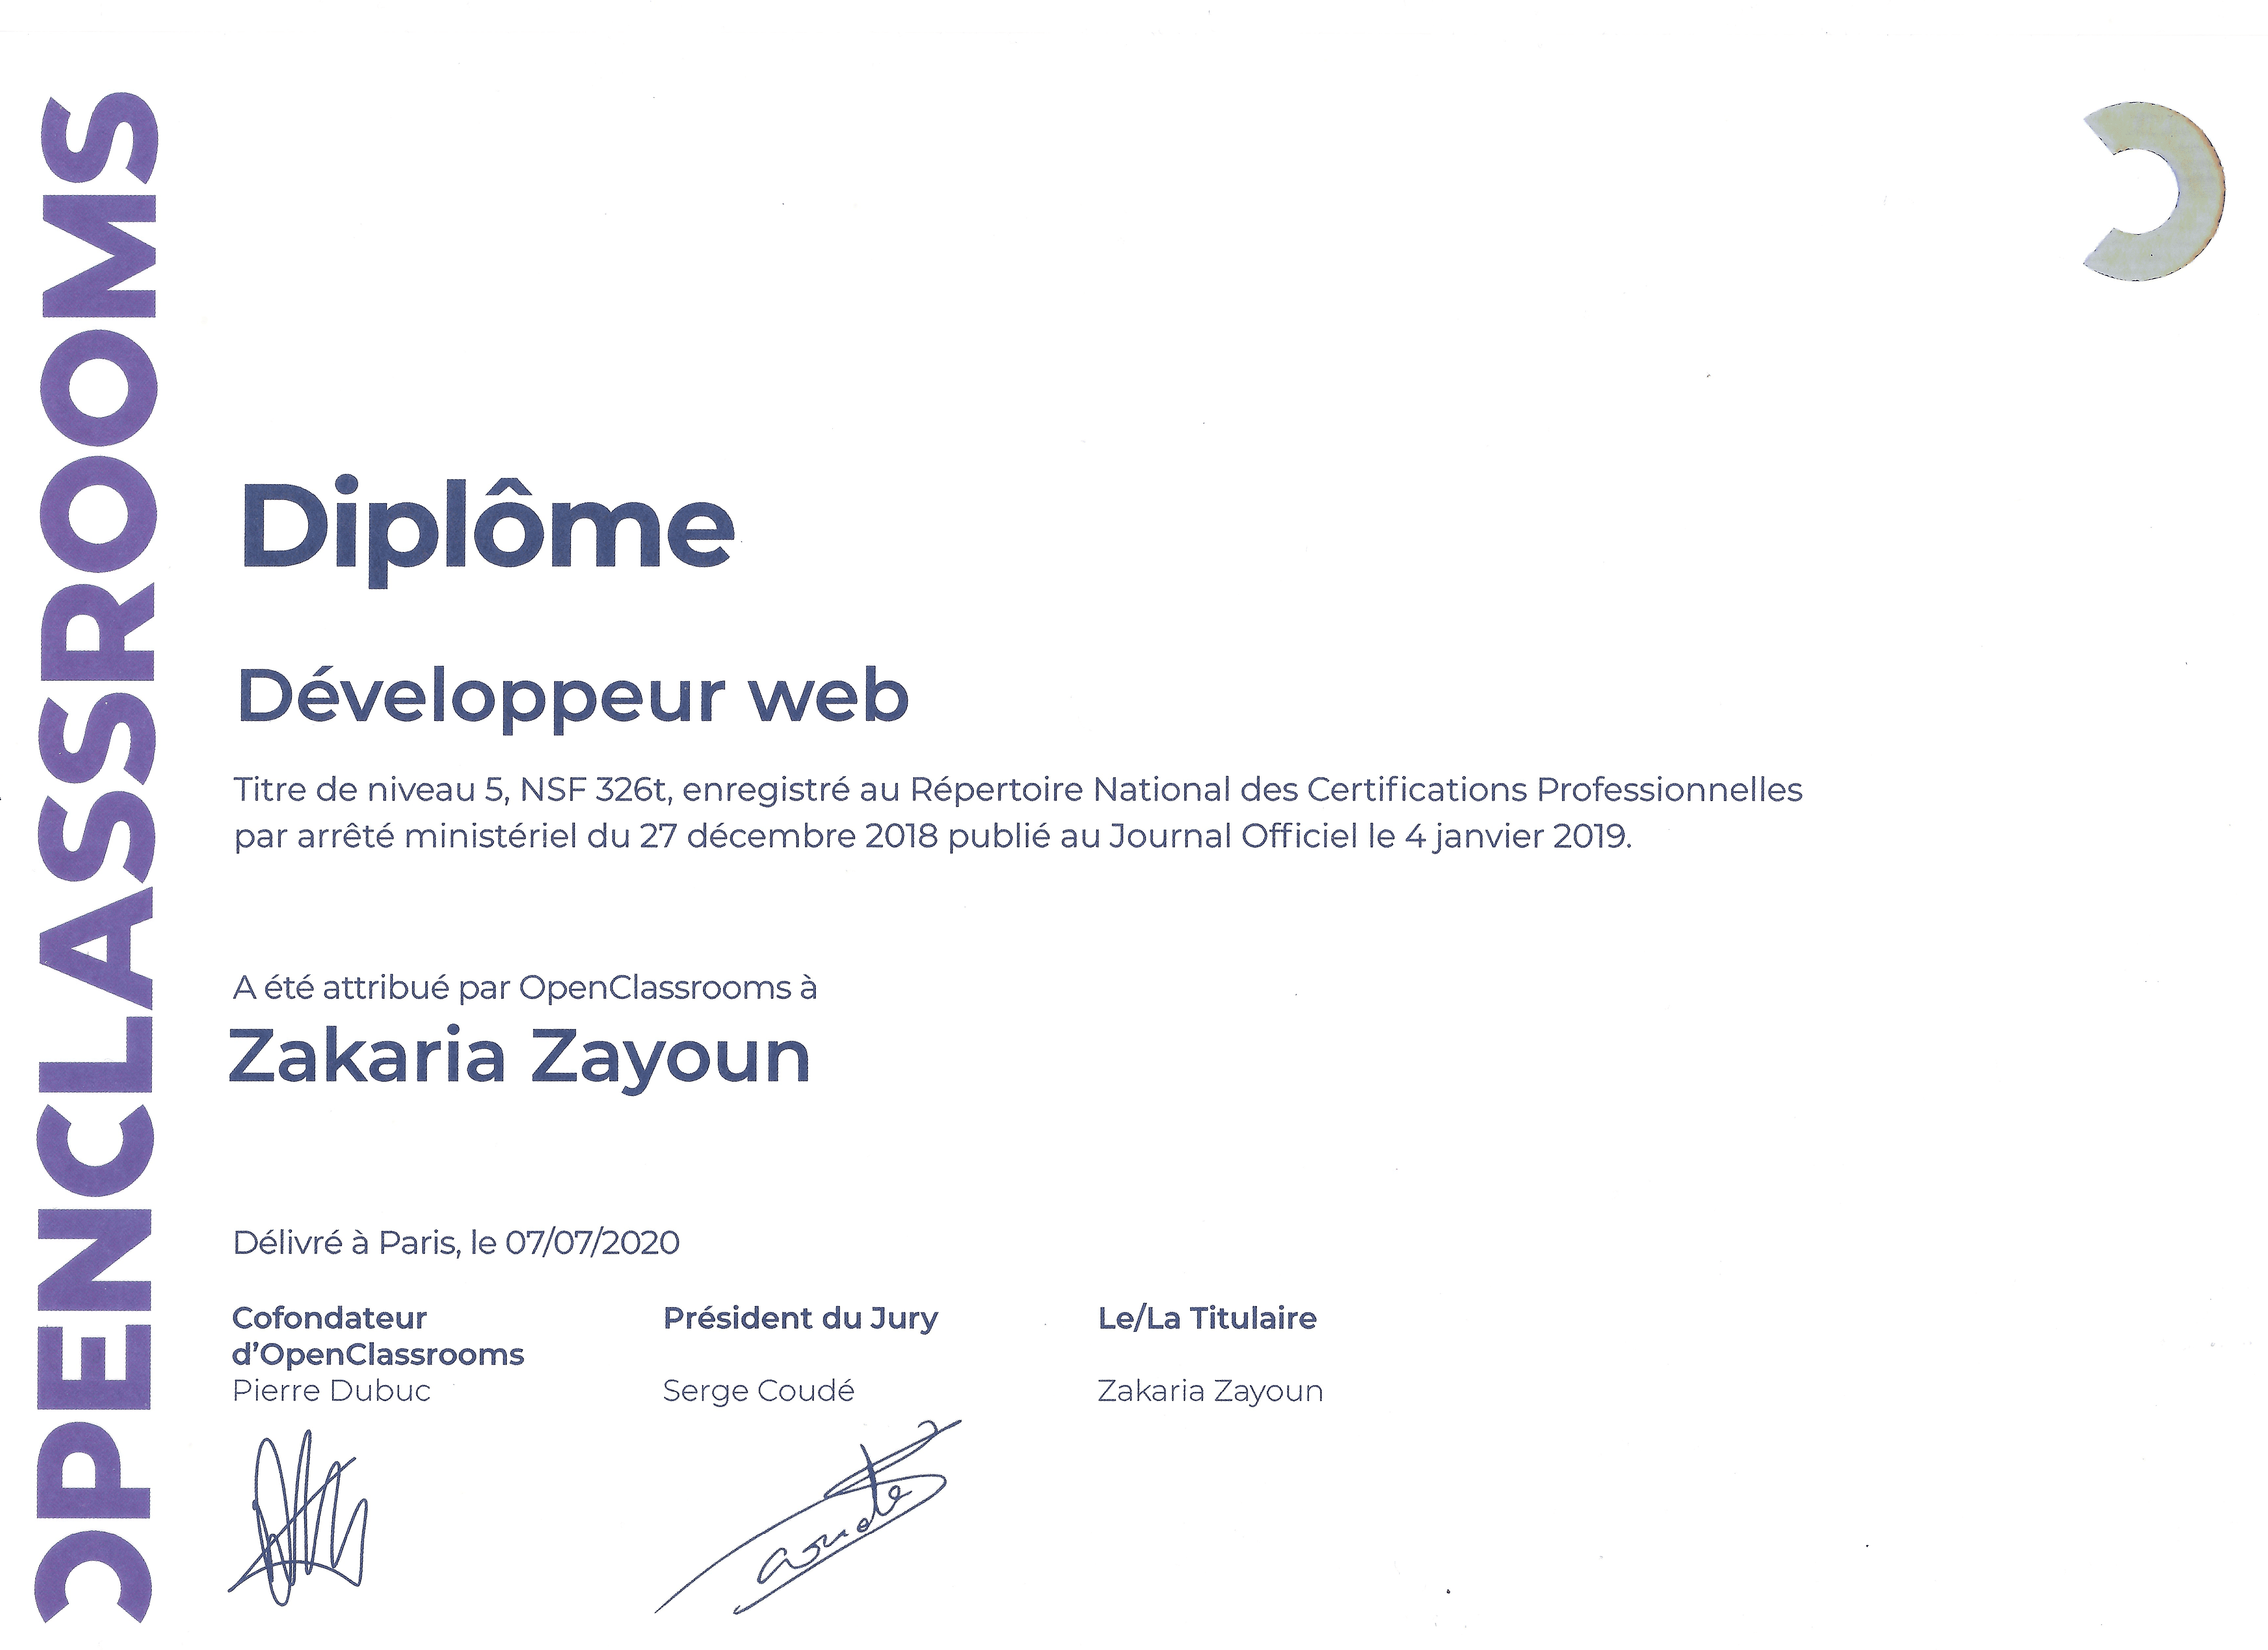 Diplôme de développeur web de Zakaria Zayoun obtenu chez OpenClassrooms.